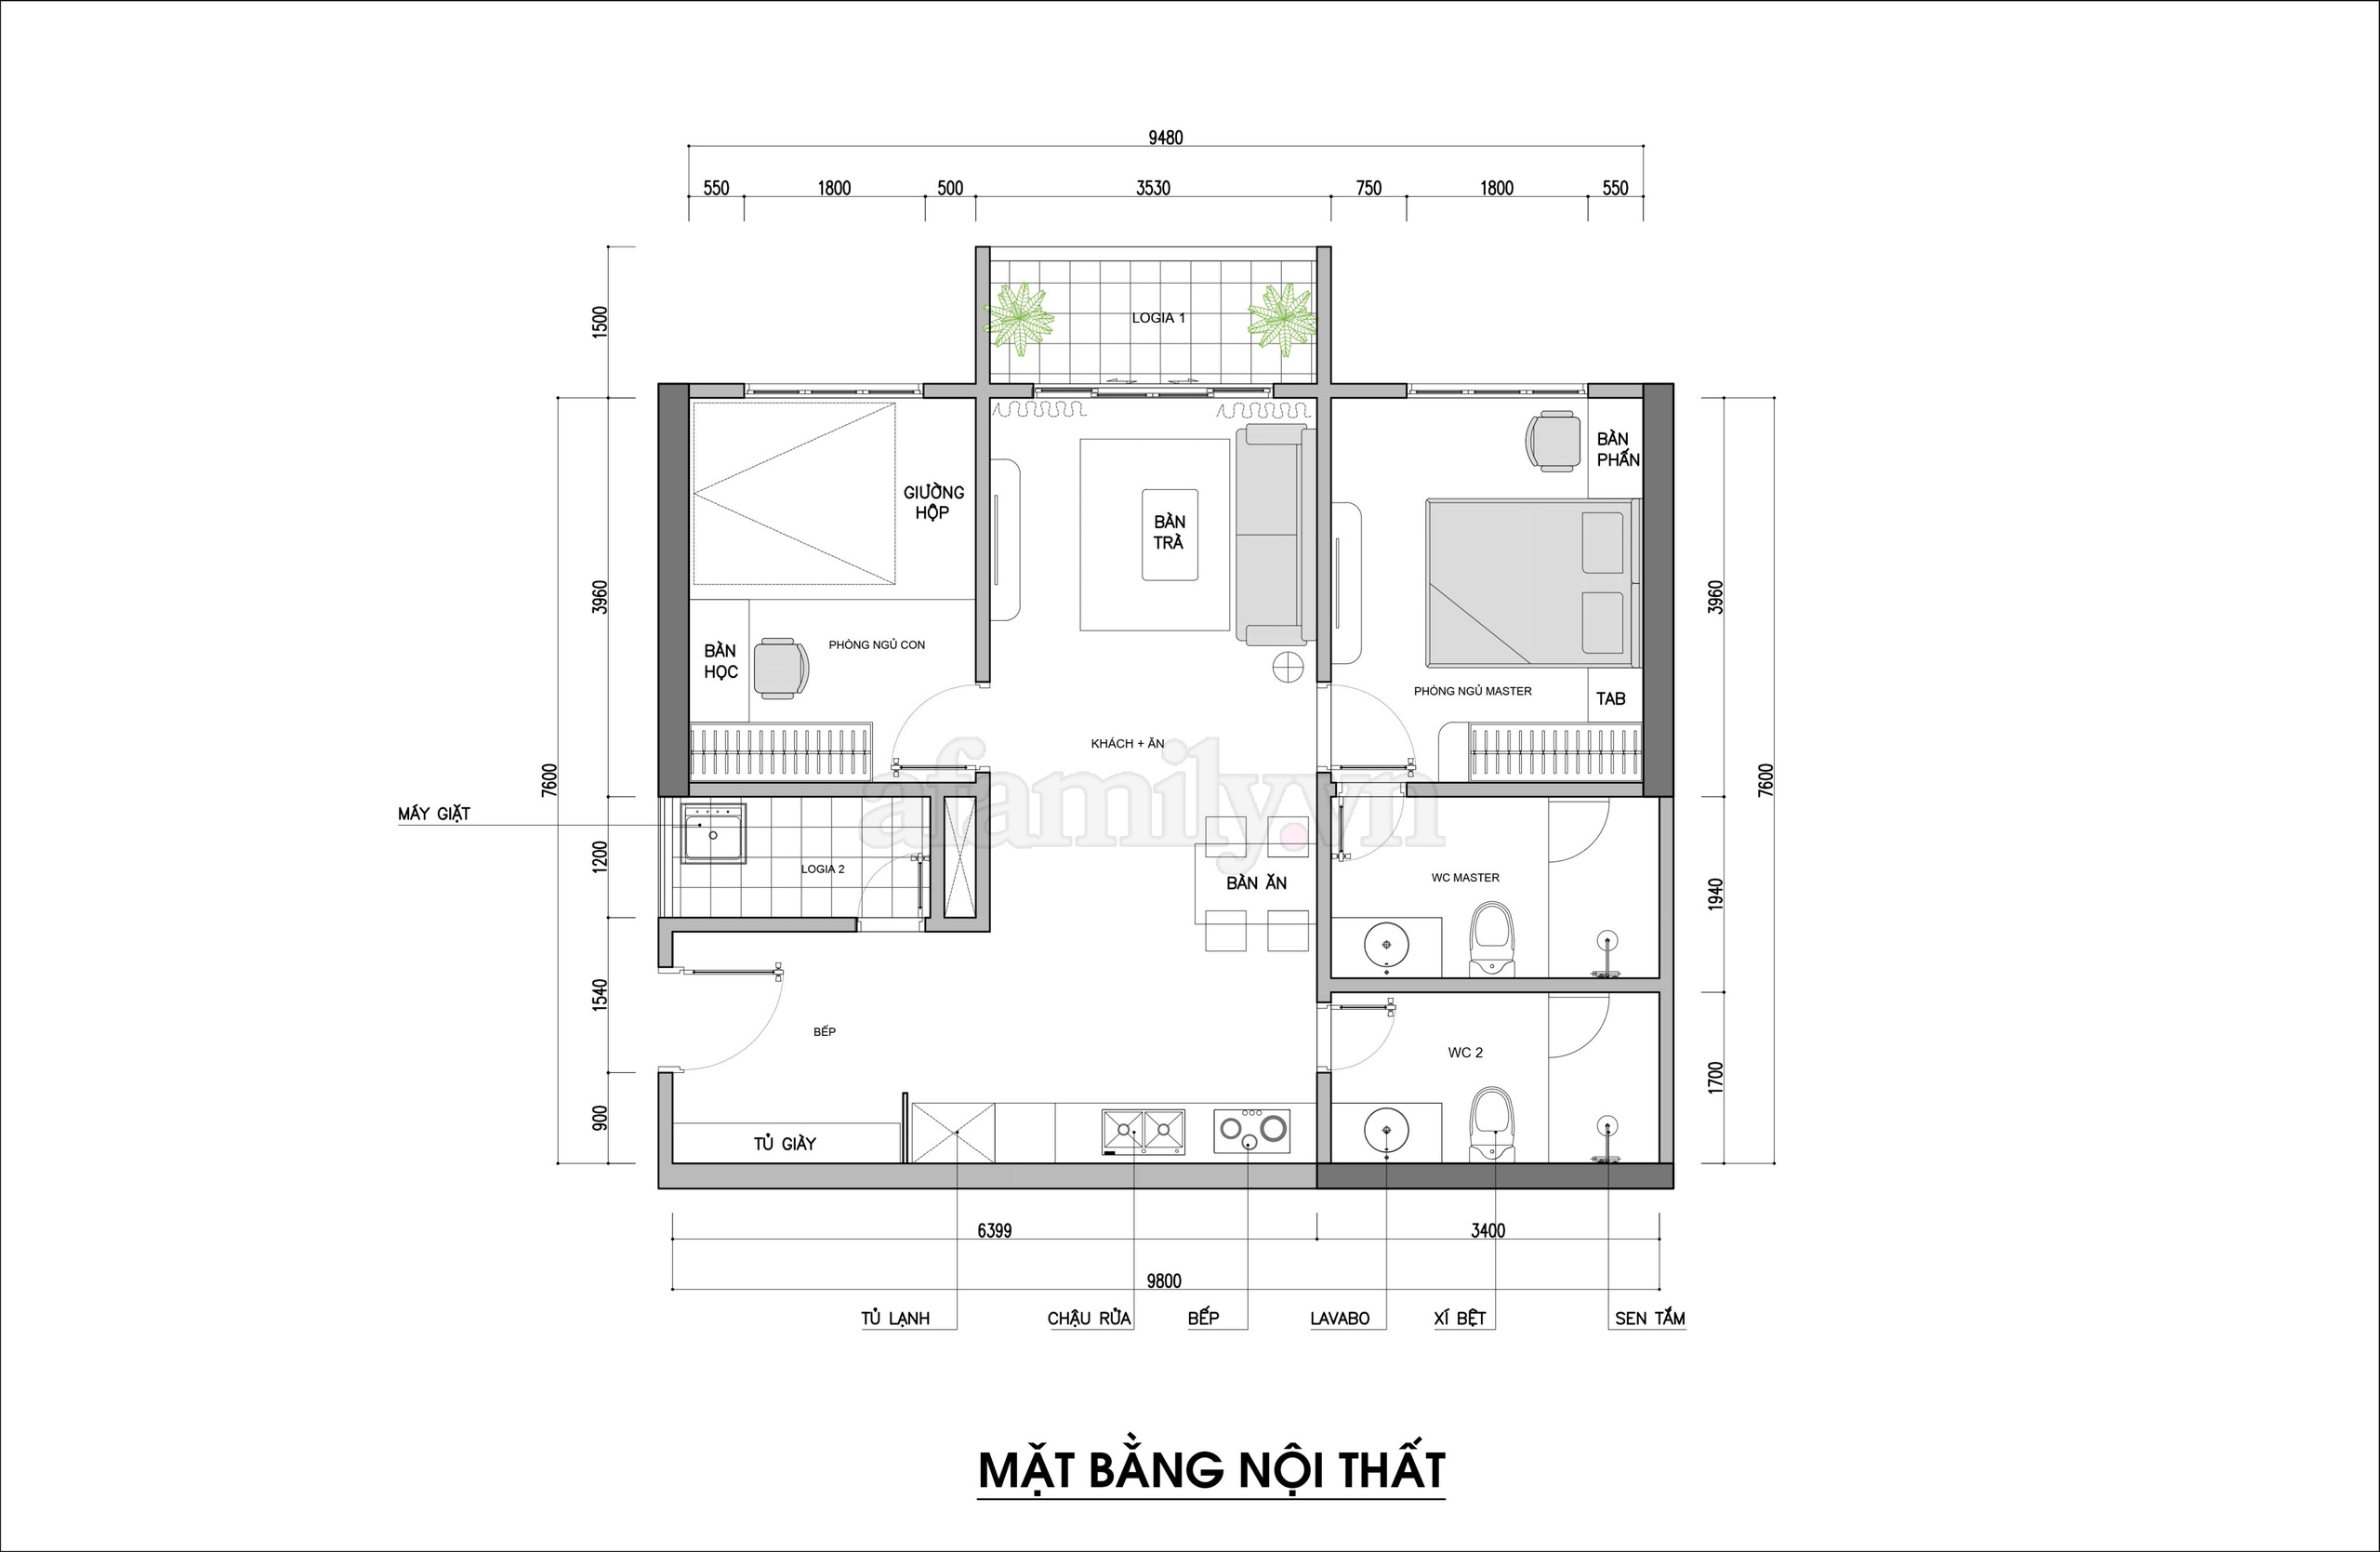 Tư vấn thiết kế căn hộ rộng 88m² theo phong cách Rustic hiện đại cho gia đình ở Hoàng Mai, chi phí tiết kiệm chỉ 118 triệu đồng - Ảnh 2.